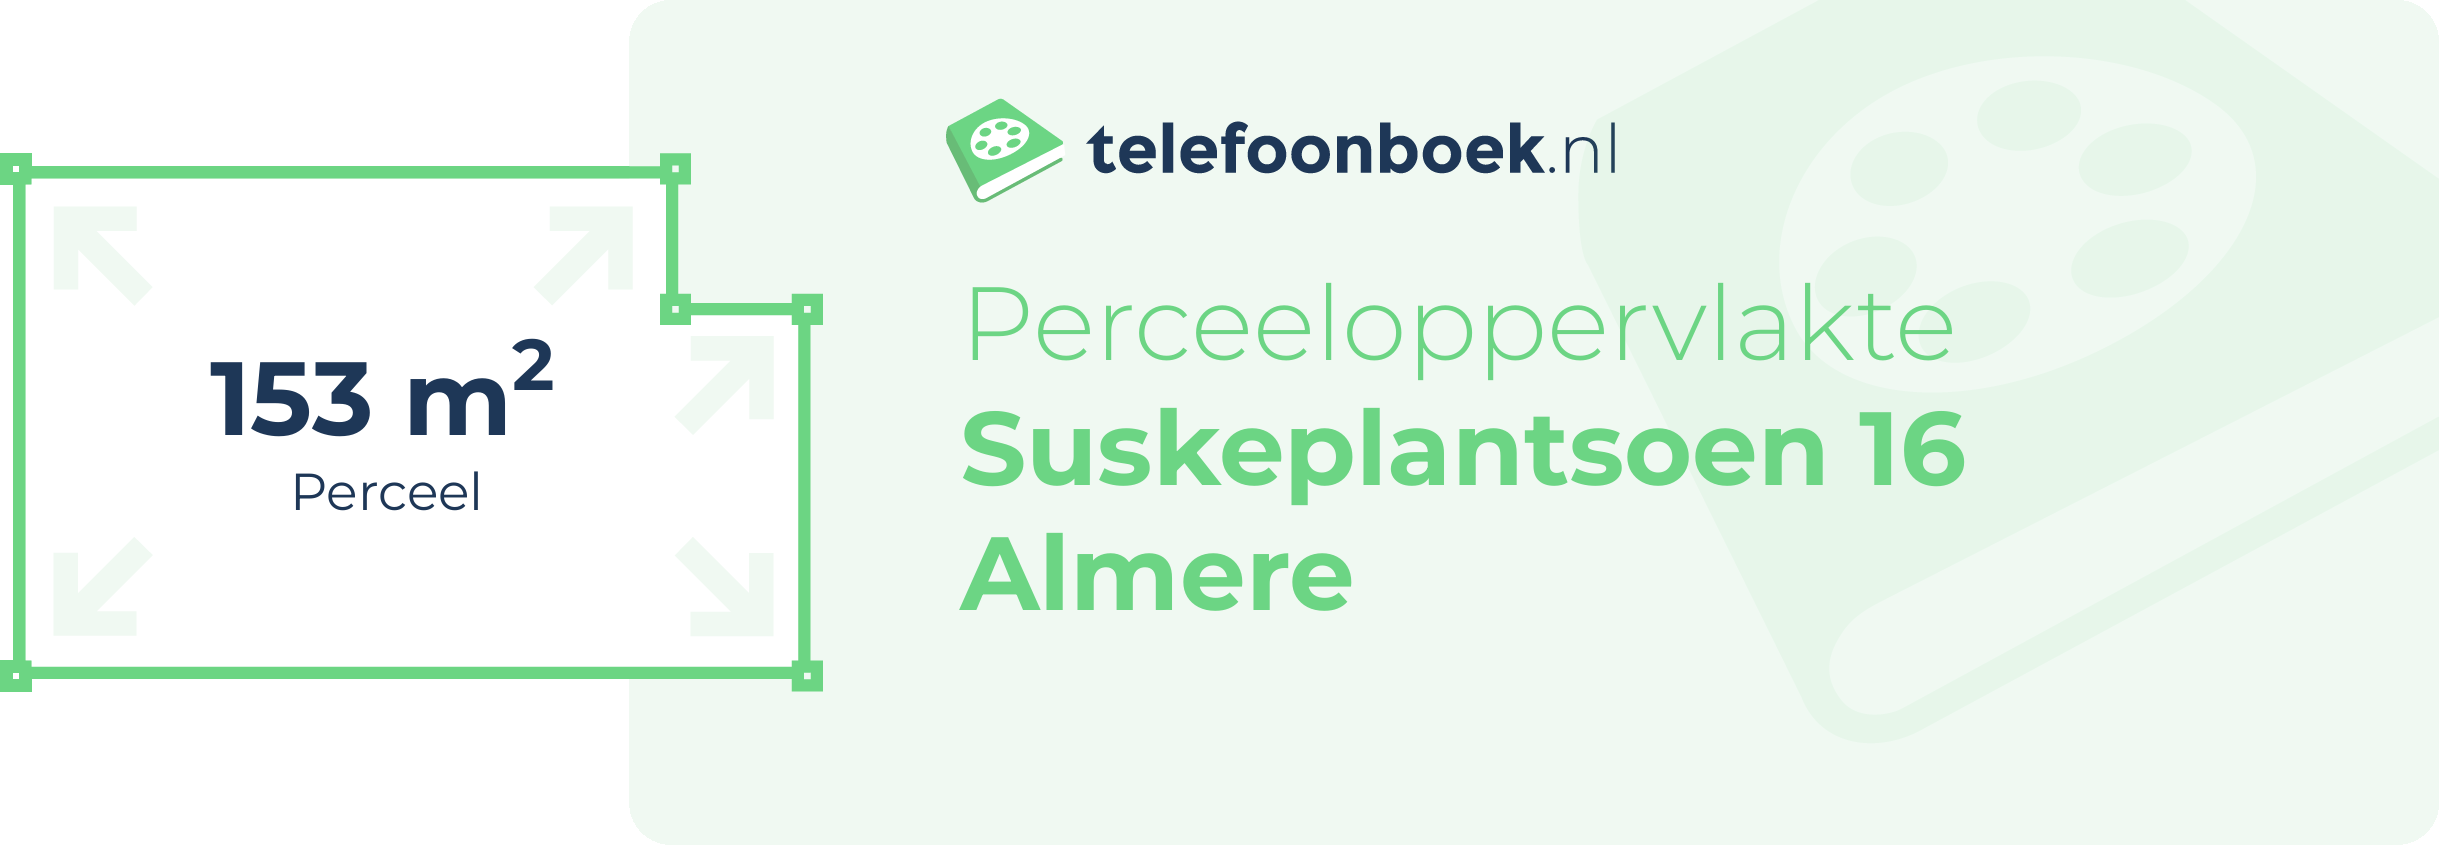 Perceeloppervlakte Suskeplantsoen 16 Almere